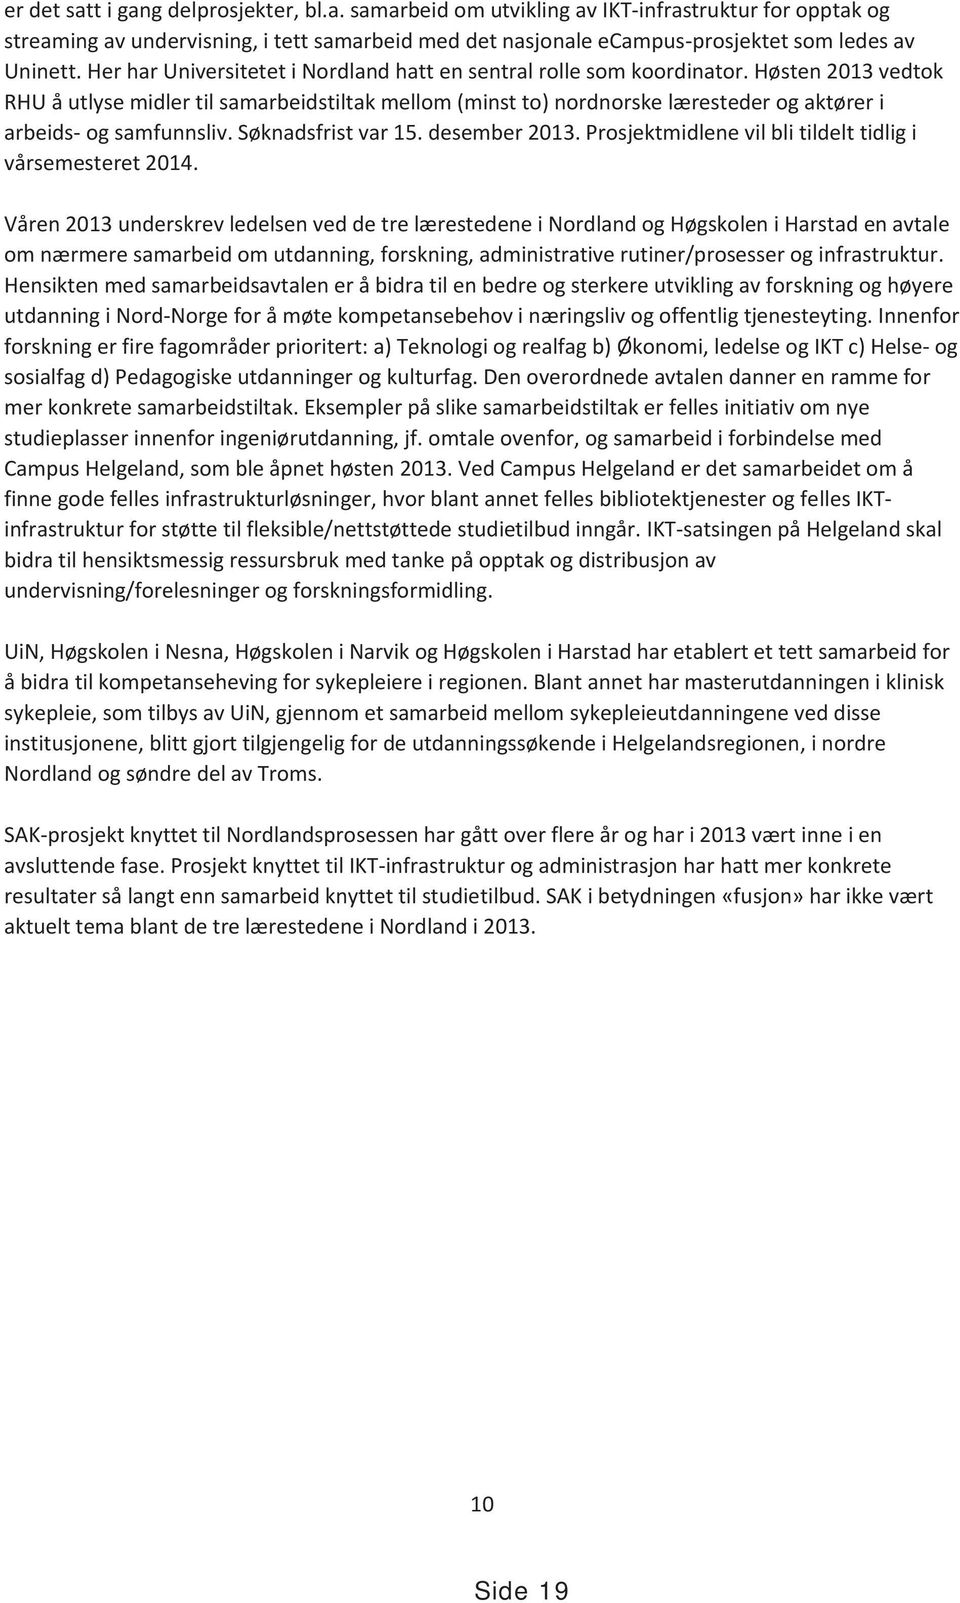 Høsten 2013 vedtok RHU å utlyse midler til samarbeidstiltak mellom (minst to) nordnorske læresteder og aktører i arbeids- og samfunnsliv. Søknadsfrist var 15. desember 2013.